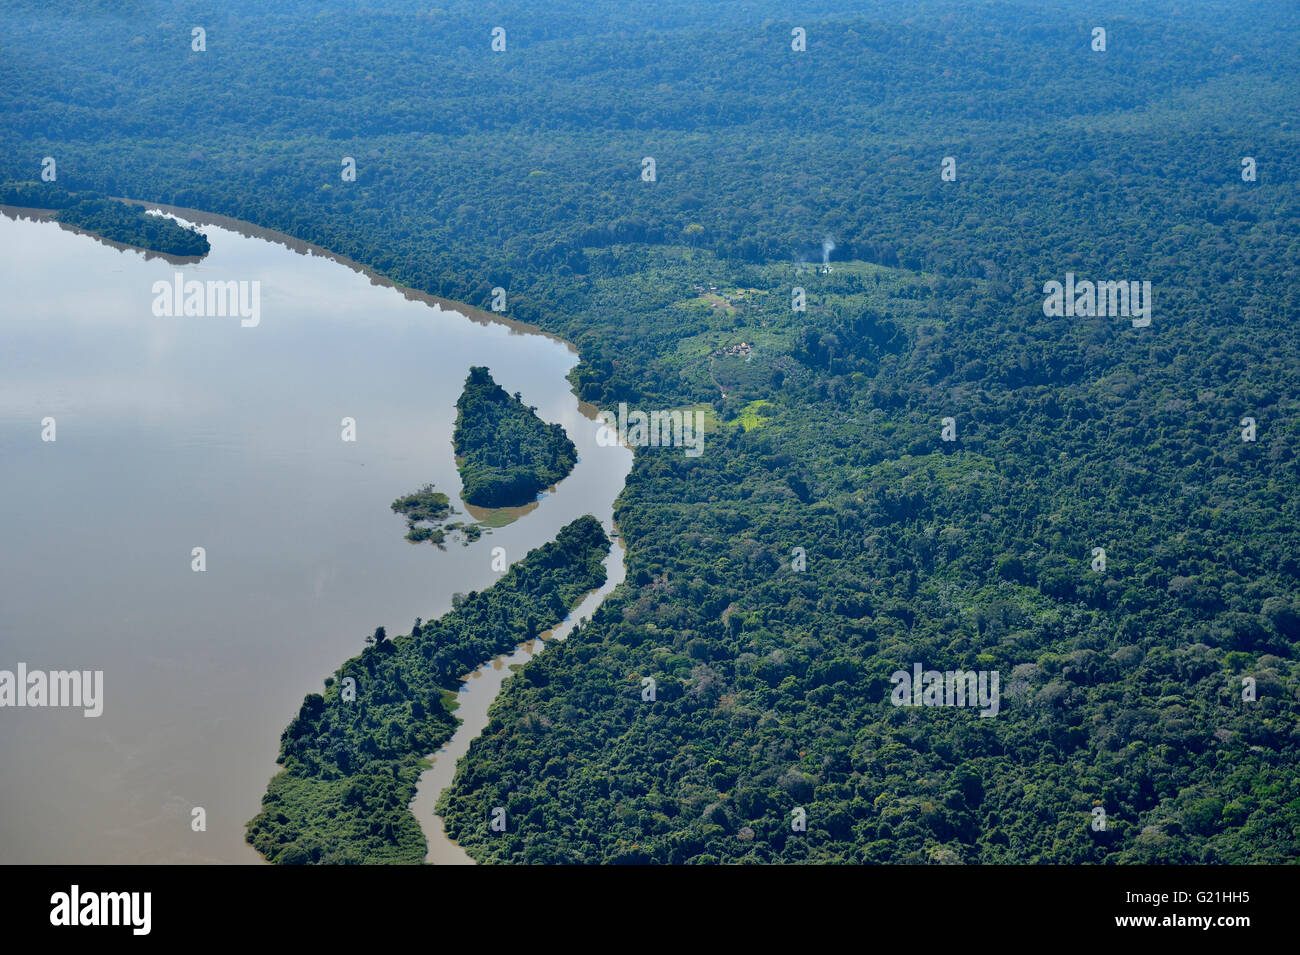 Vista aérea, pueblo indígena Sawle Muybu, pueblo de Mudndururú, en el recodo del río río Tapajos, selva amazónica, Itaituba Foto de stock